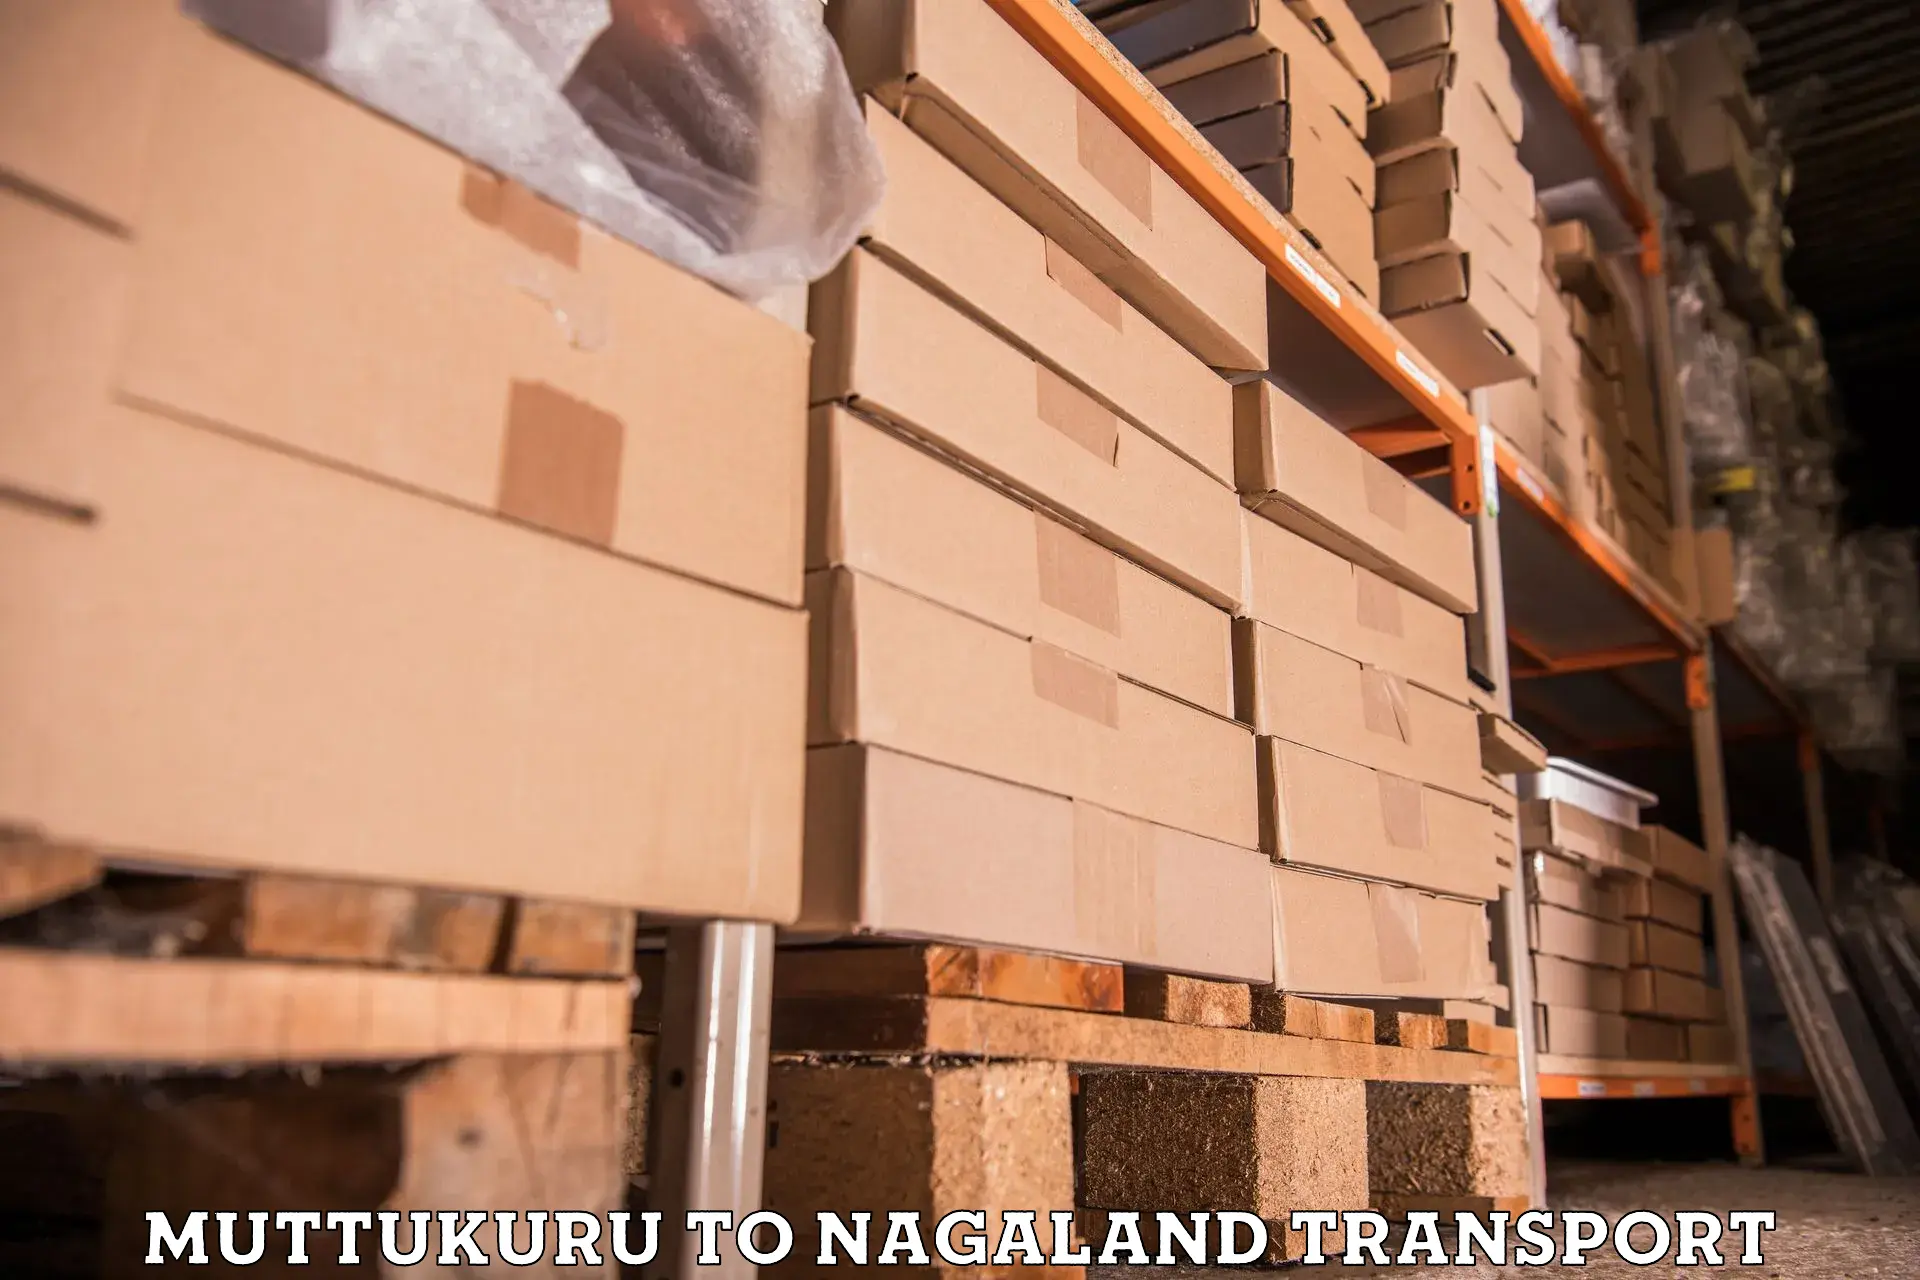 Furniture transport service in Muttukuru to Mokokchung